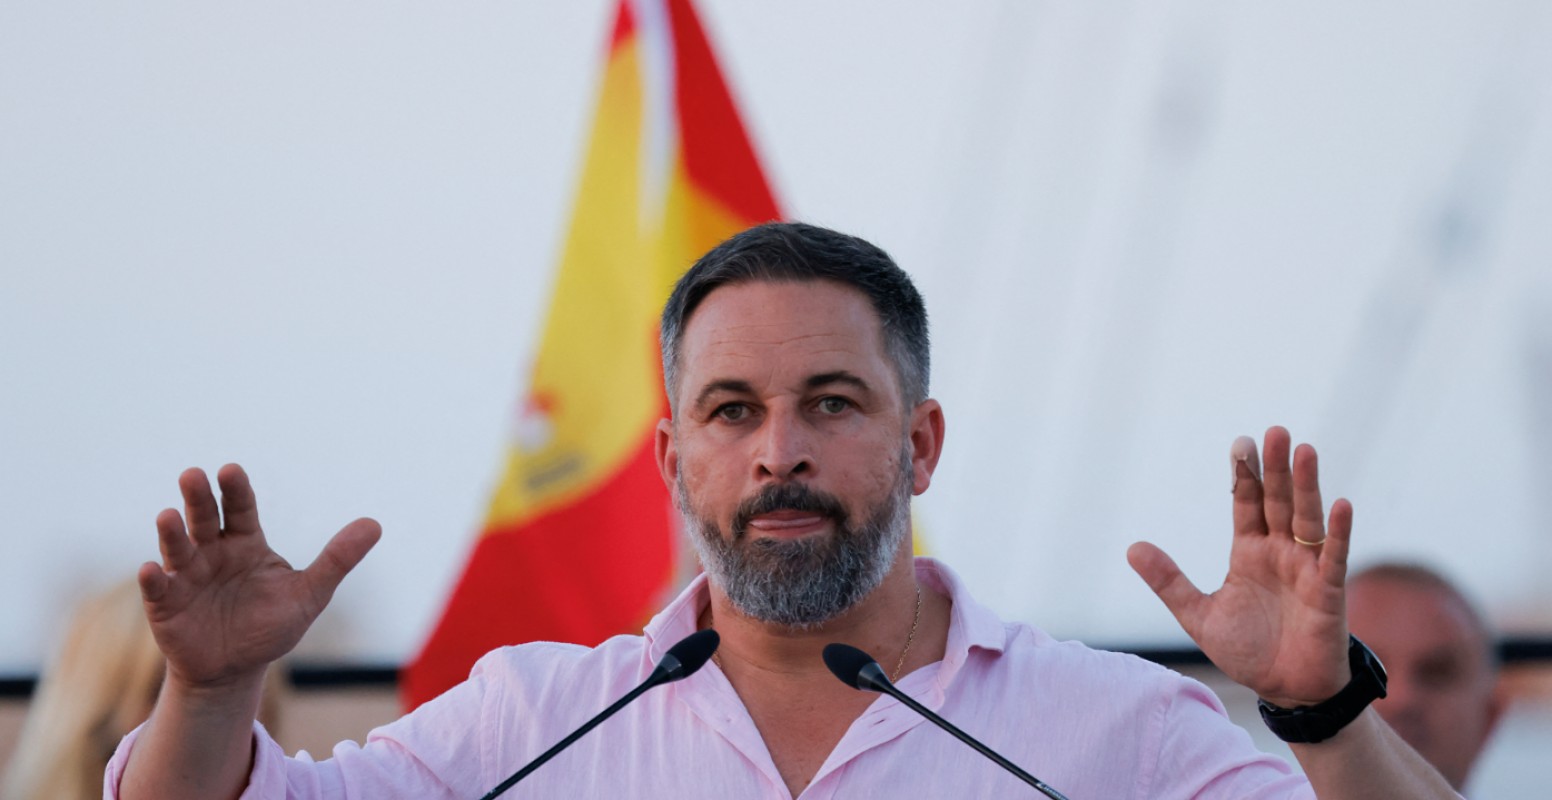 Élections anticipées en Espagne : le droit des LGBT+ menacé par la montée de l'extrême droite